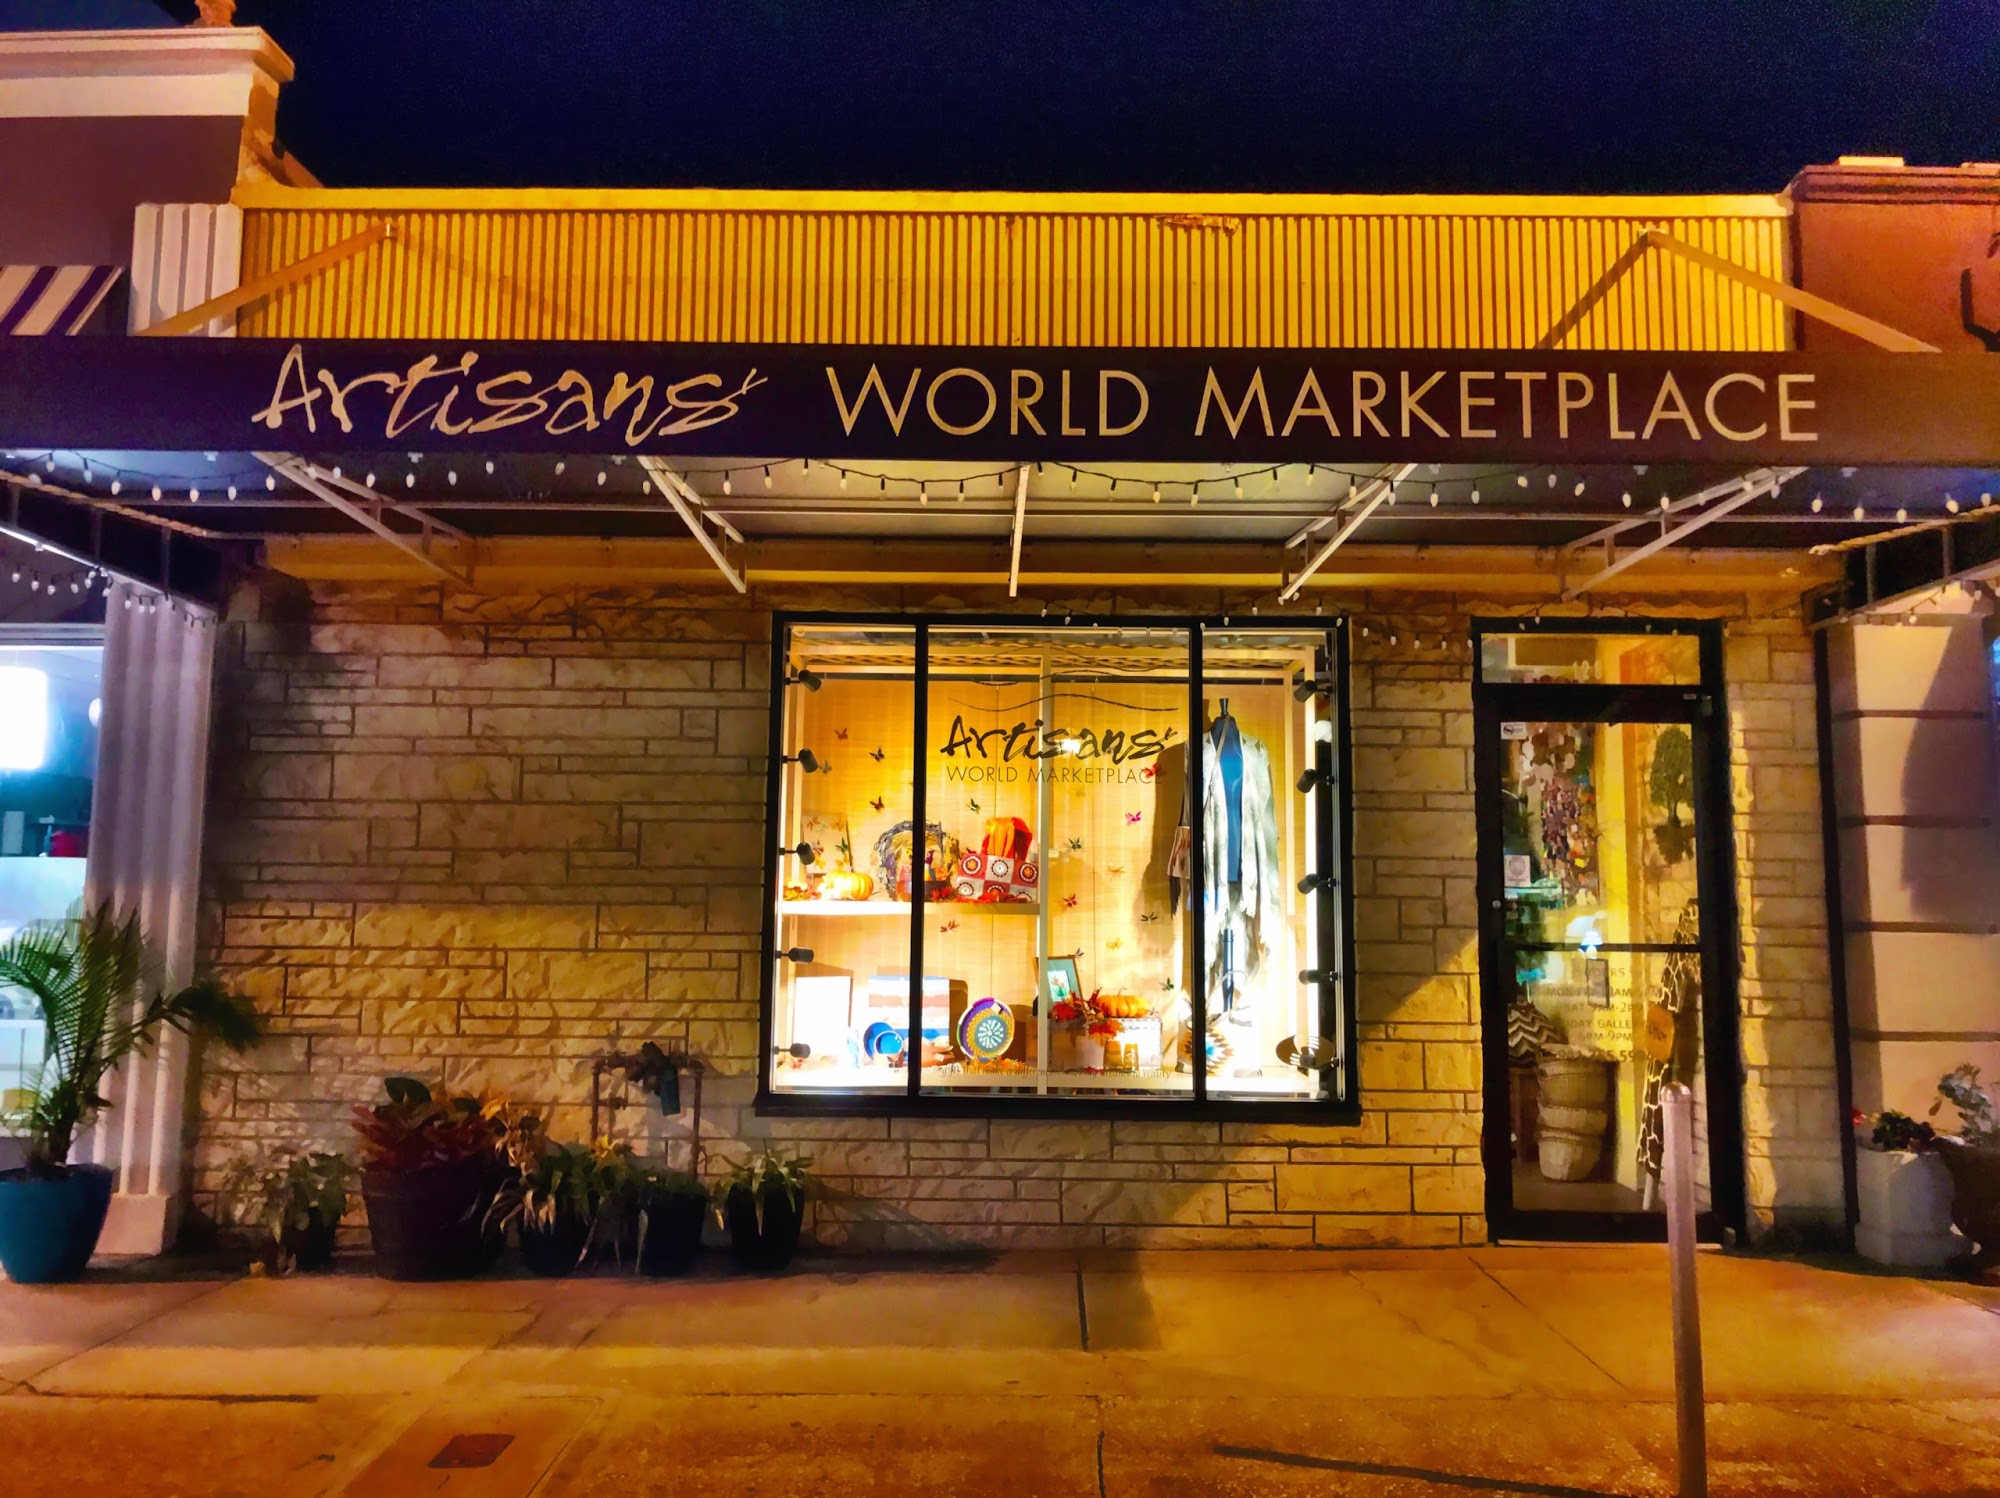 Artisans' World Marketplace